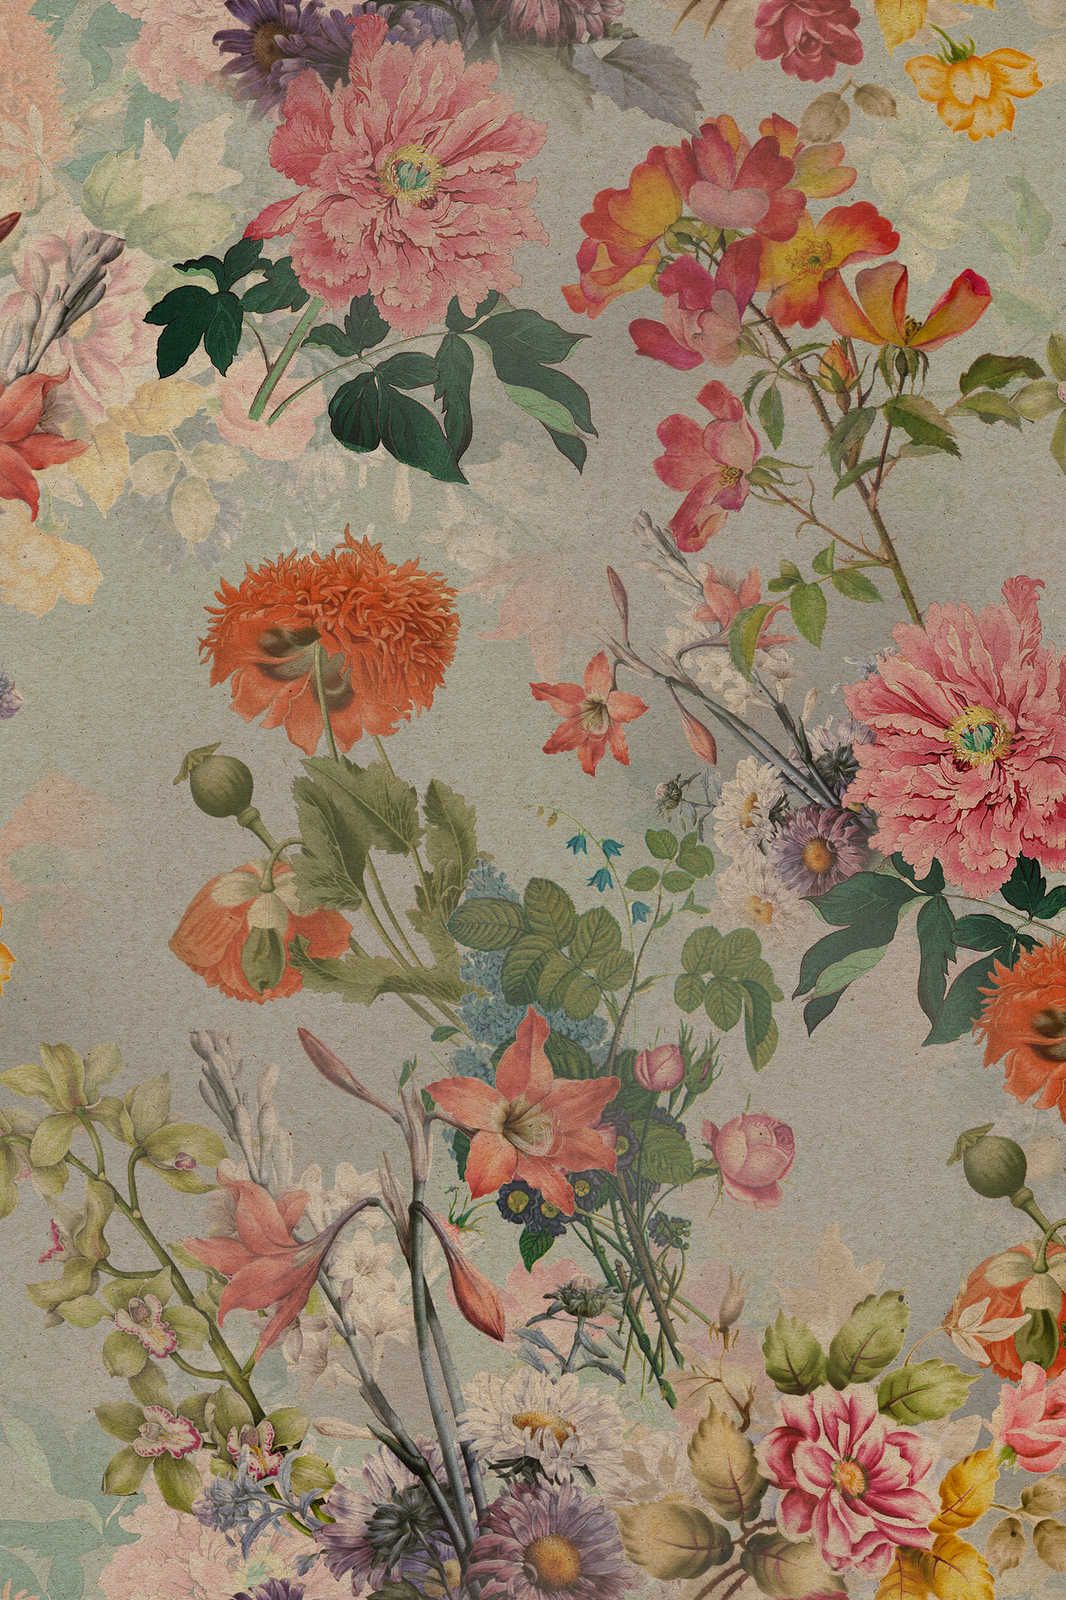             Amelies Home 1 - Vintage Blumen Leinwandbild im romantischen Landhausstil – 1,20 m x 0,80 m
        